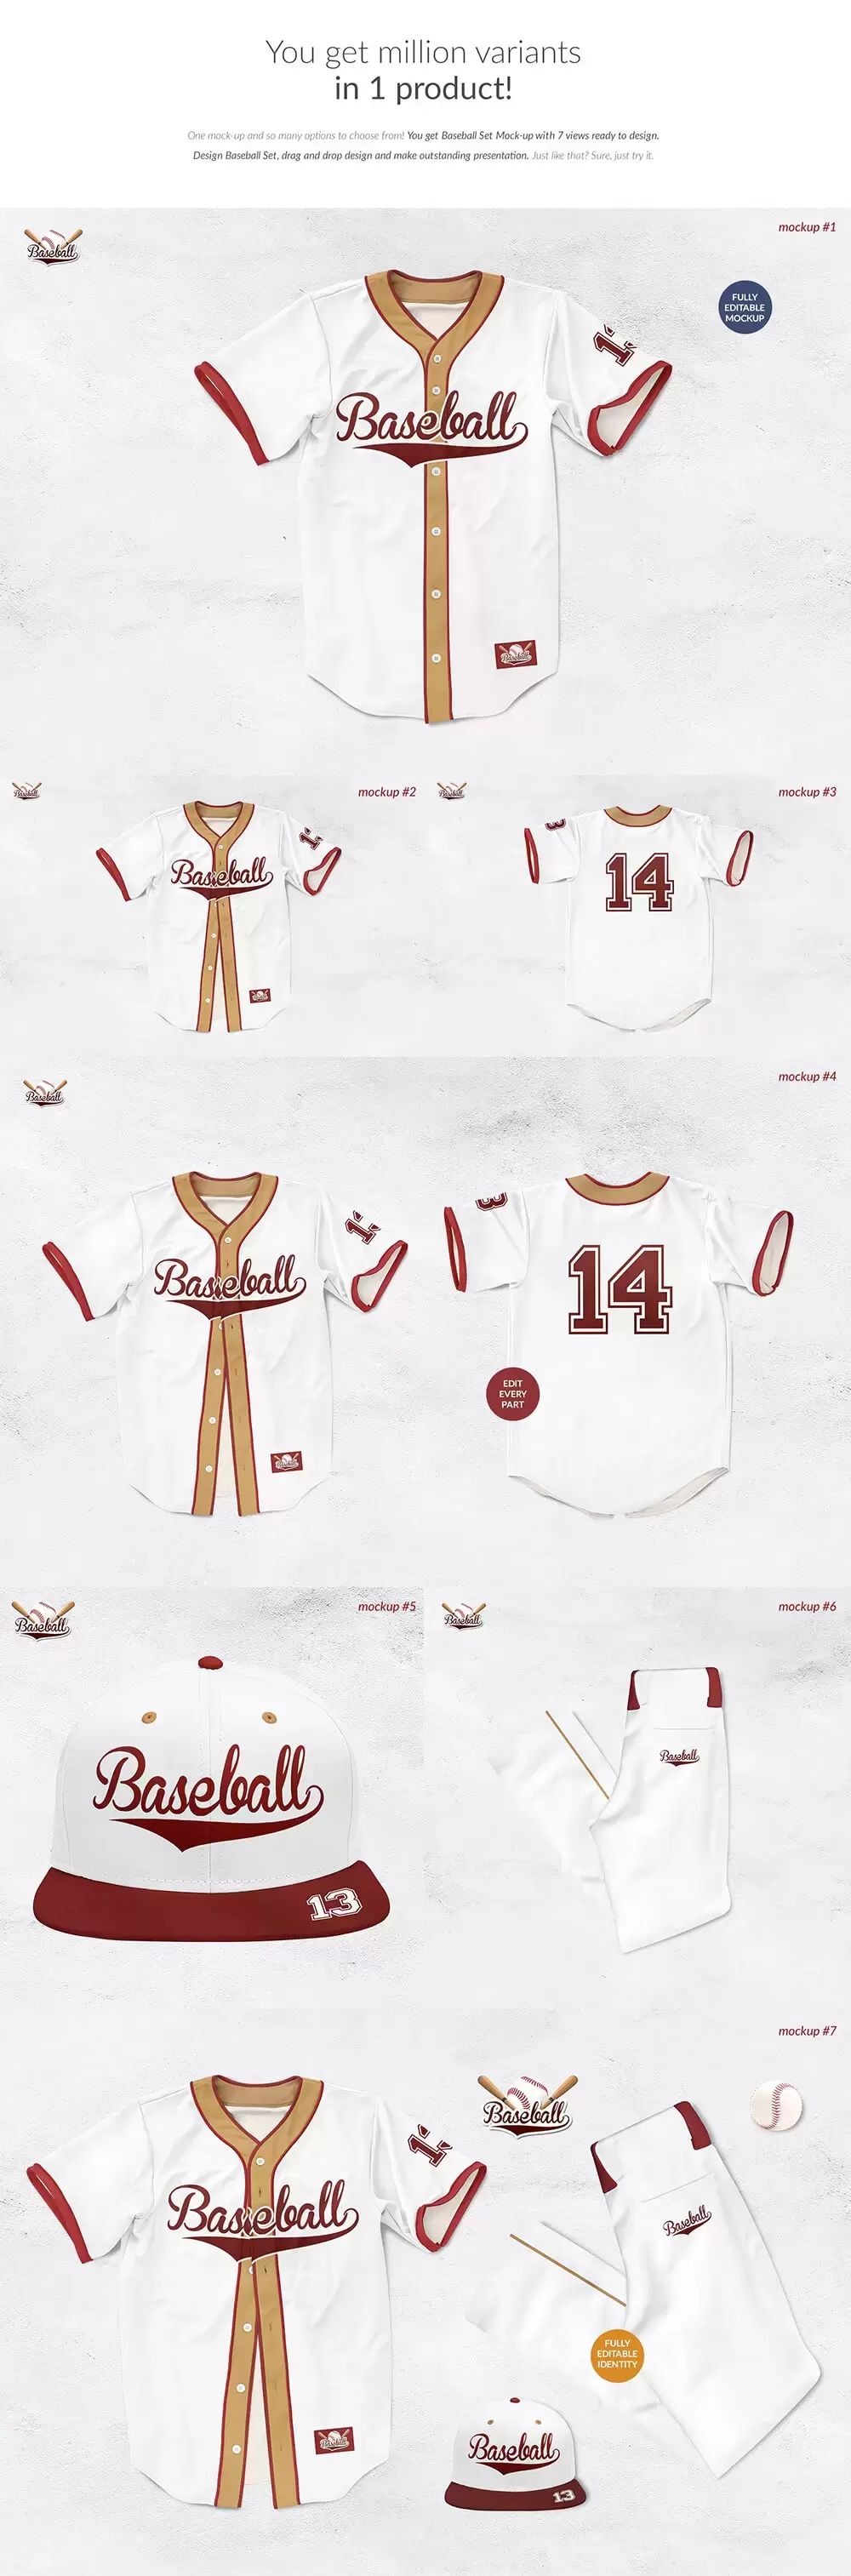 棒球服套装广告品牌设计样机 (psd)免费下载插图2